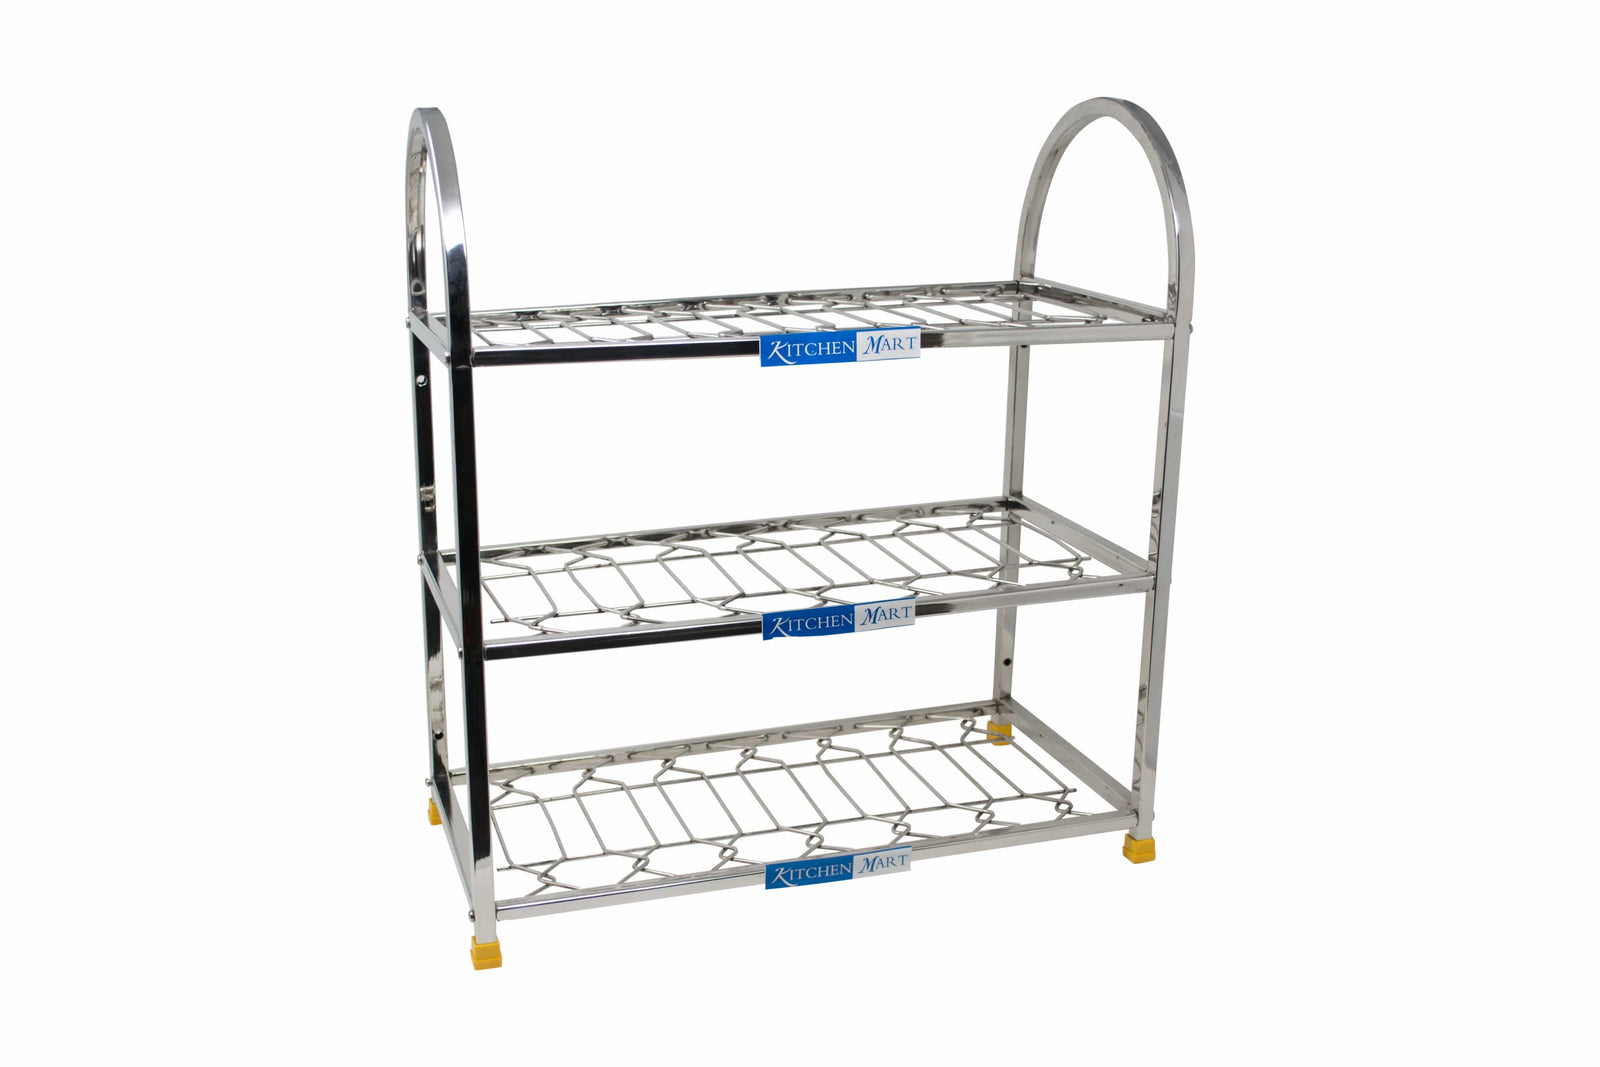 Kitchen Mart Stainless Steel shoe rack / Kitchen Storage shelf rack (18 x 3) - KITCHEN MART